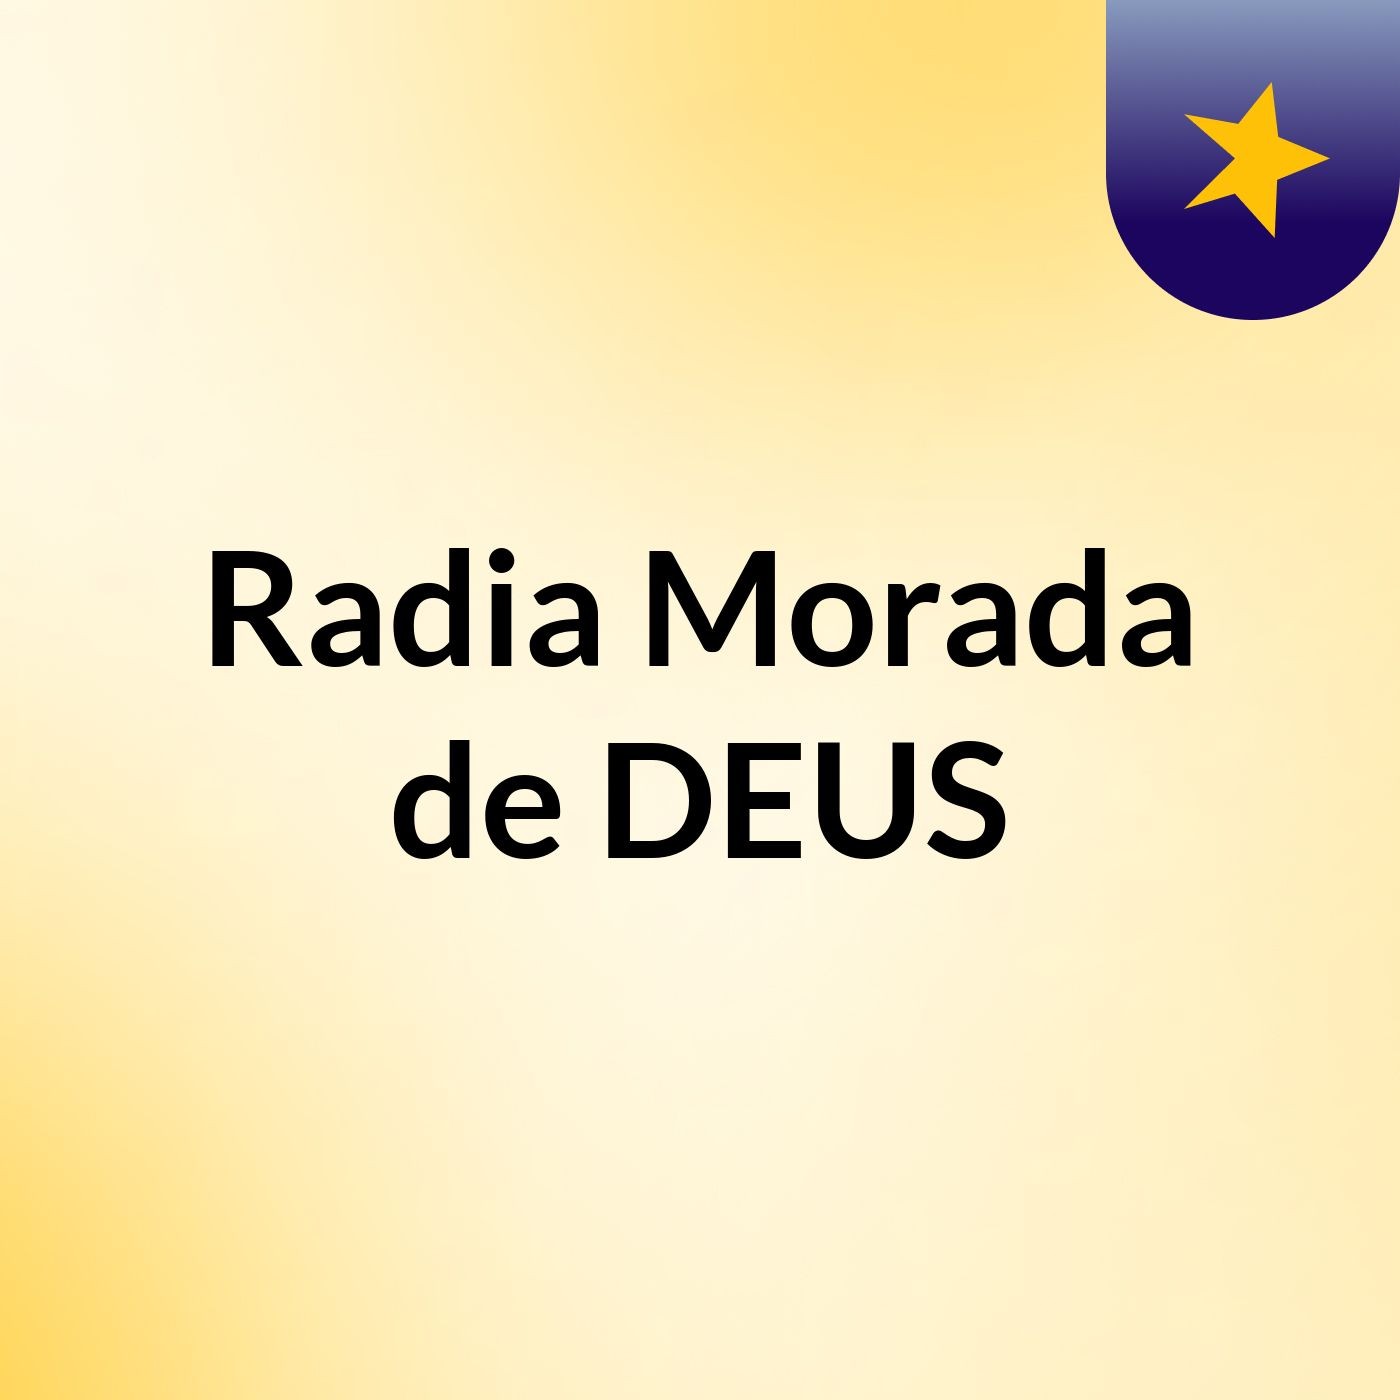 Radia Morada de DEUS